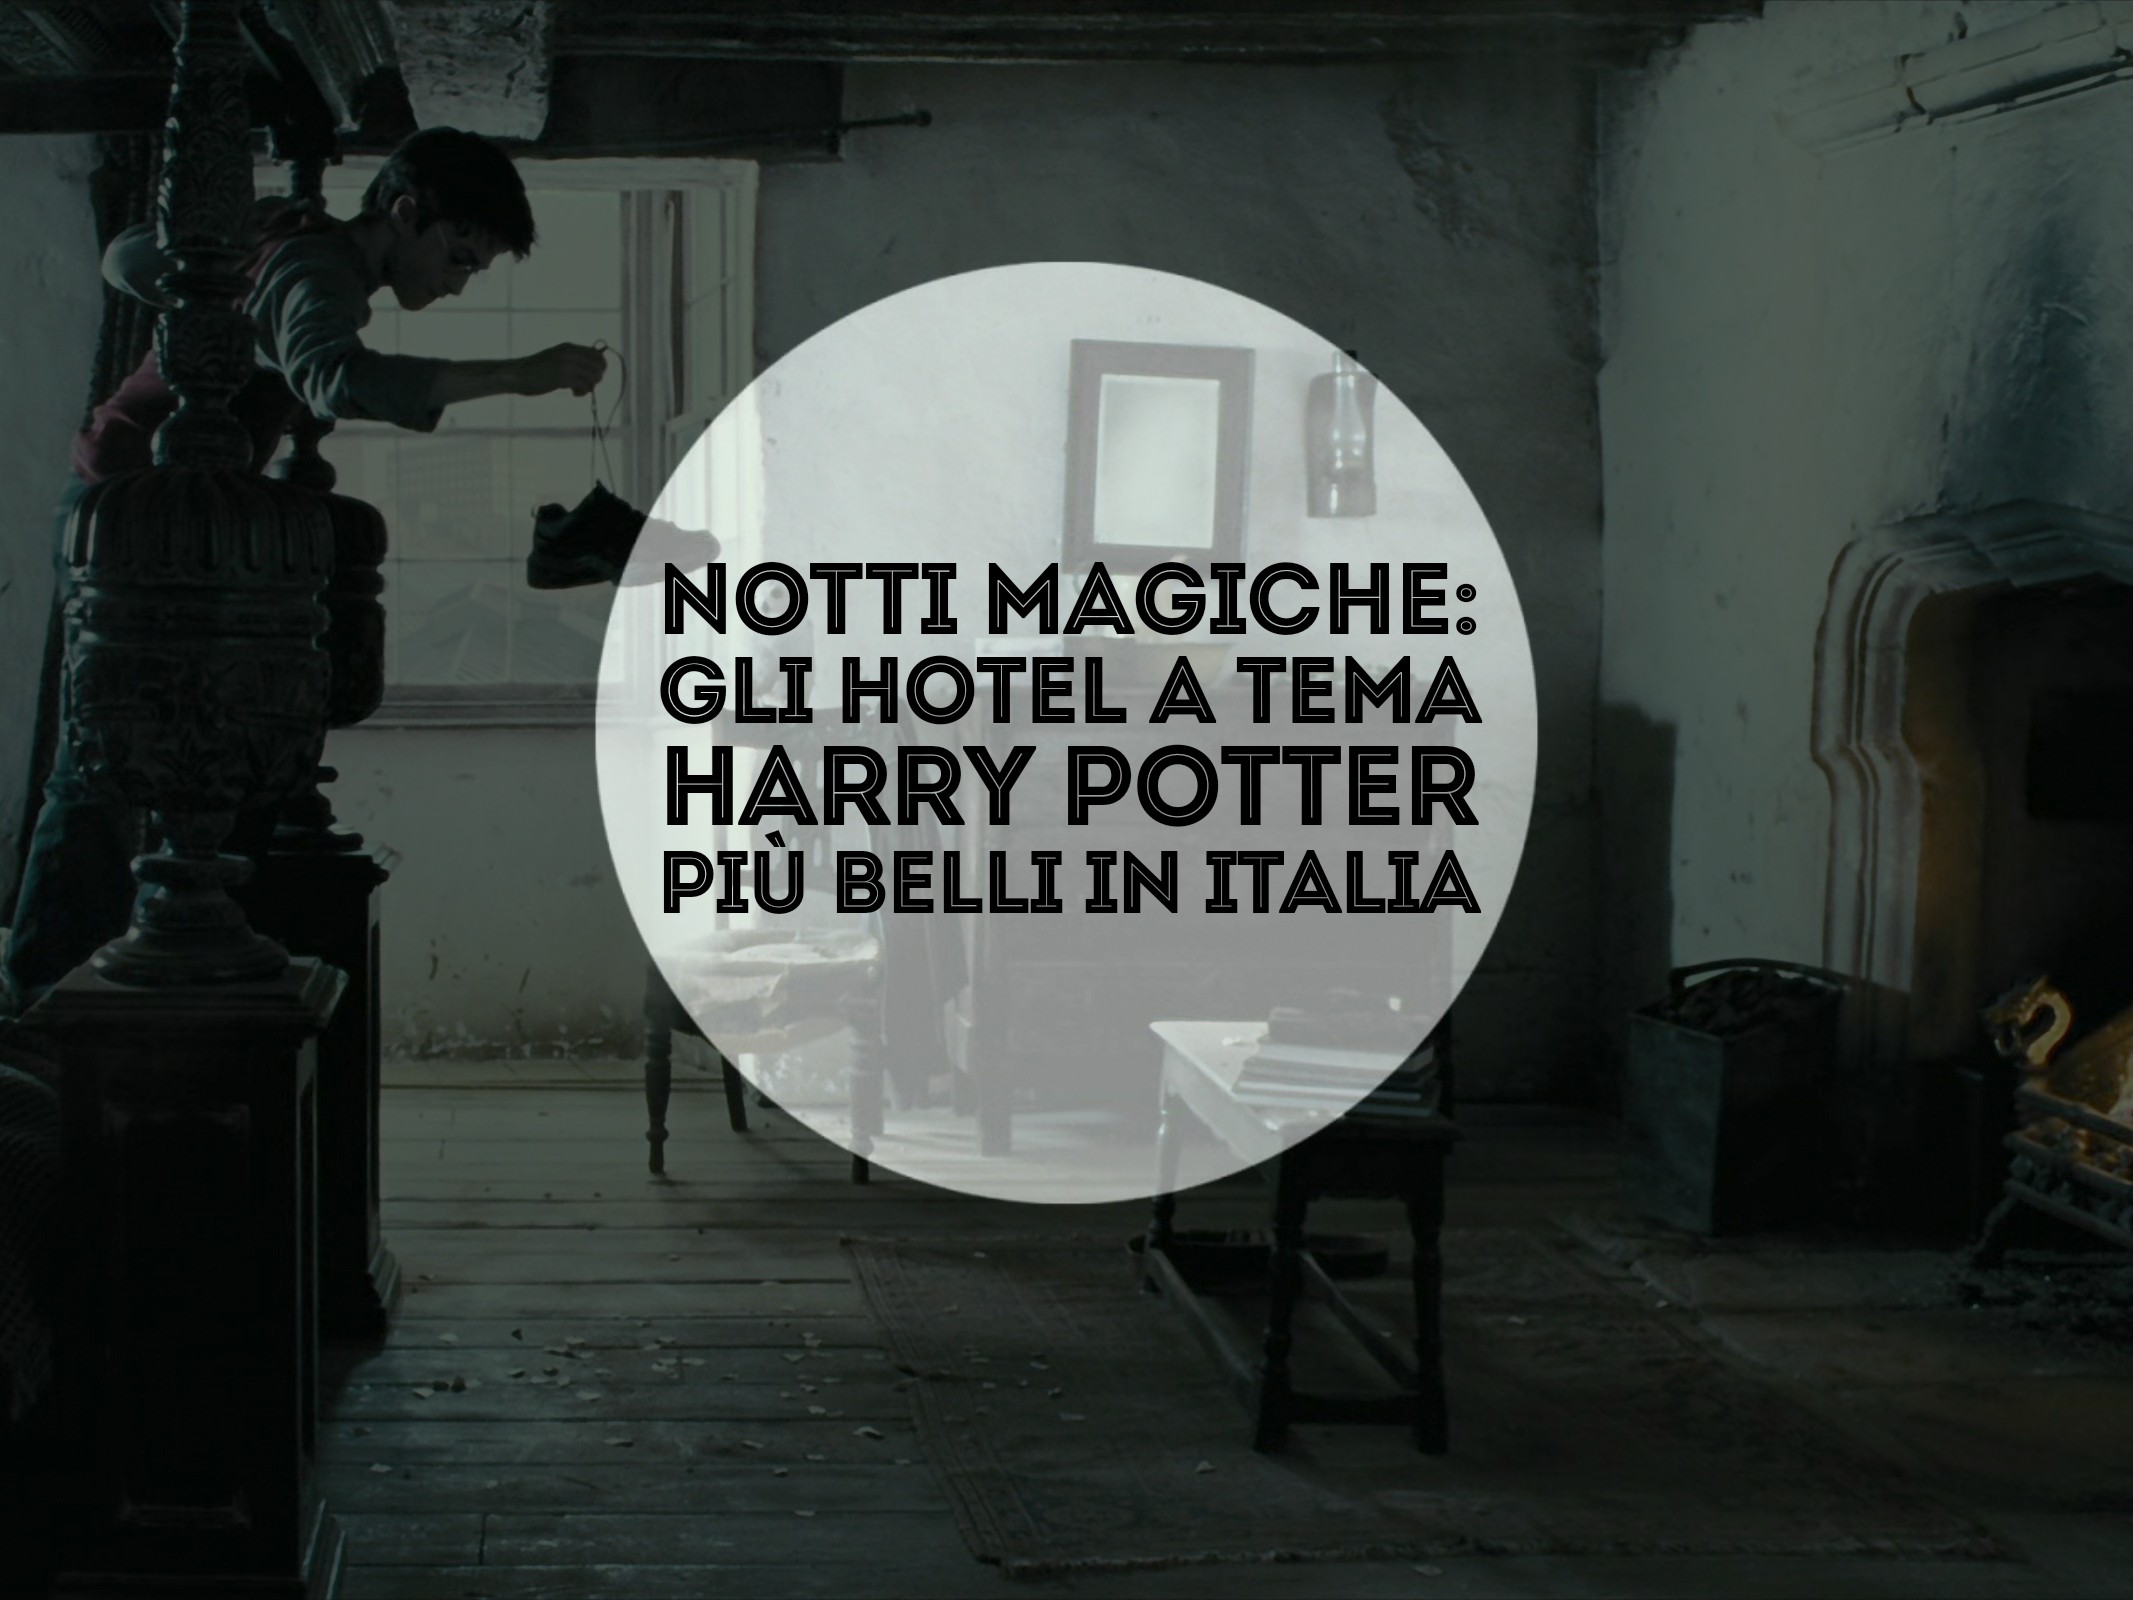 Notti magiche: gli hotel a tema Harry Potter più belli in italia